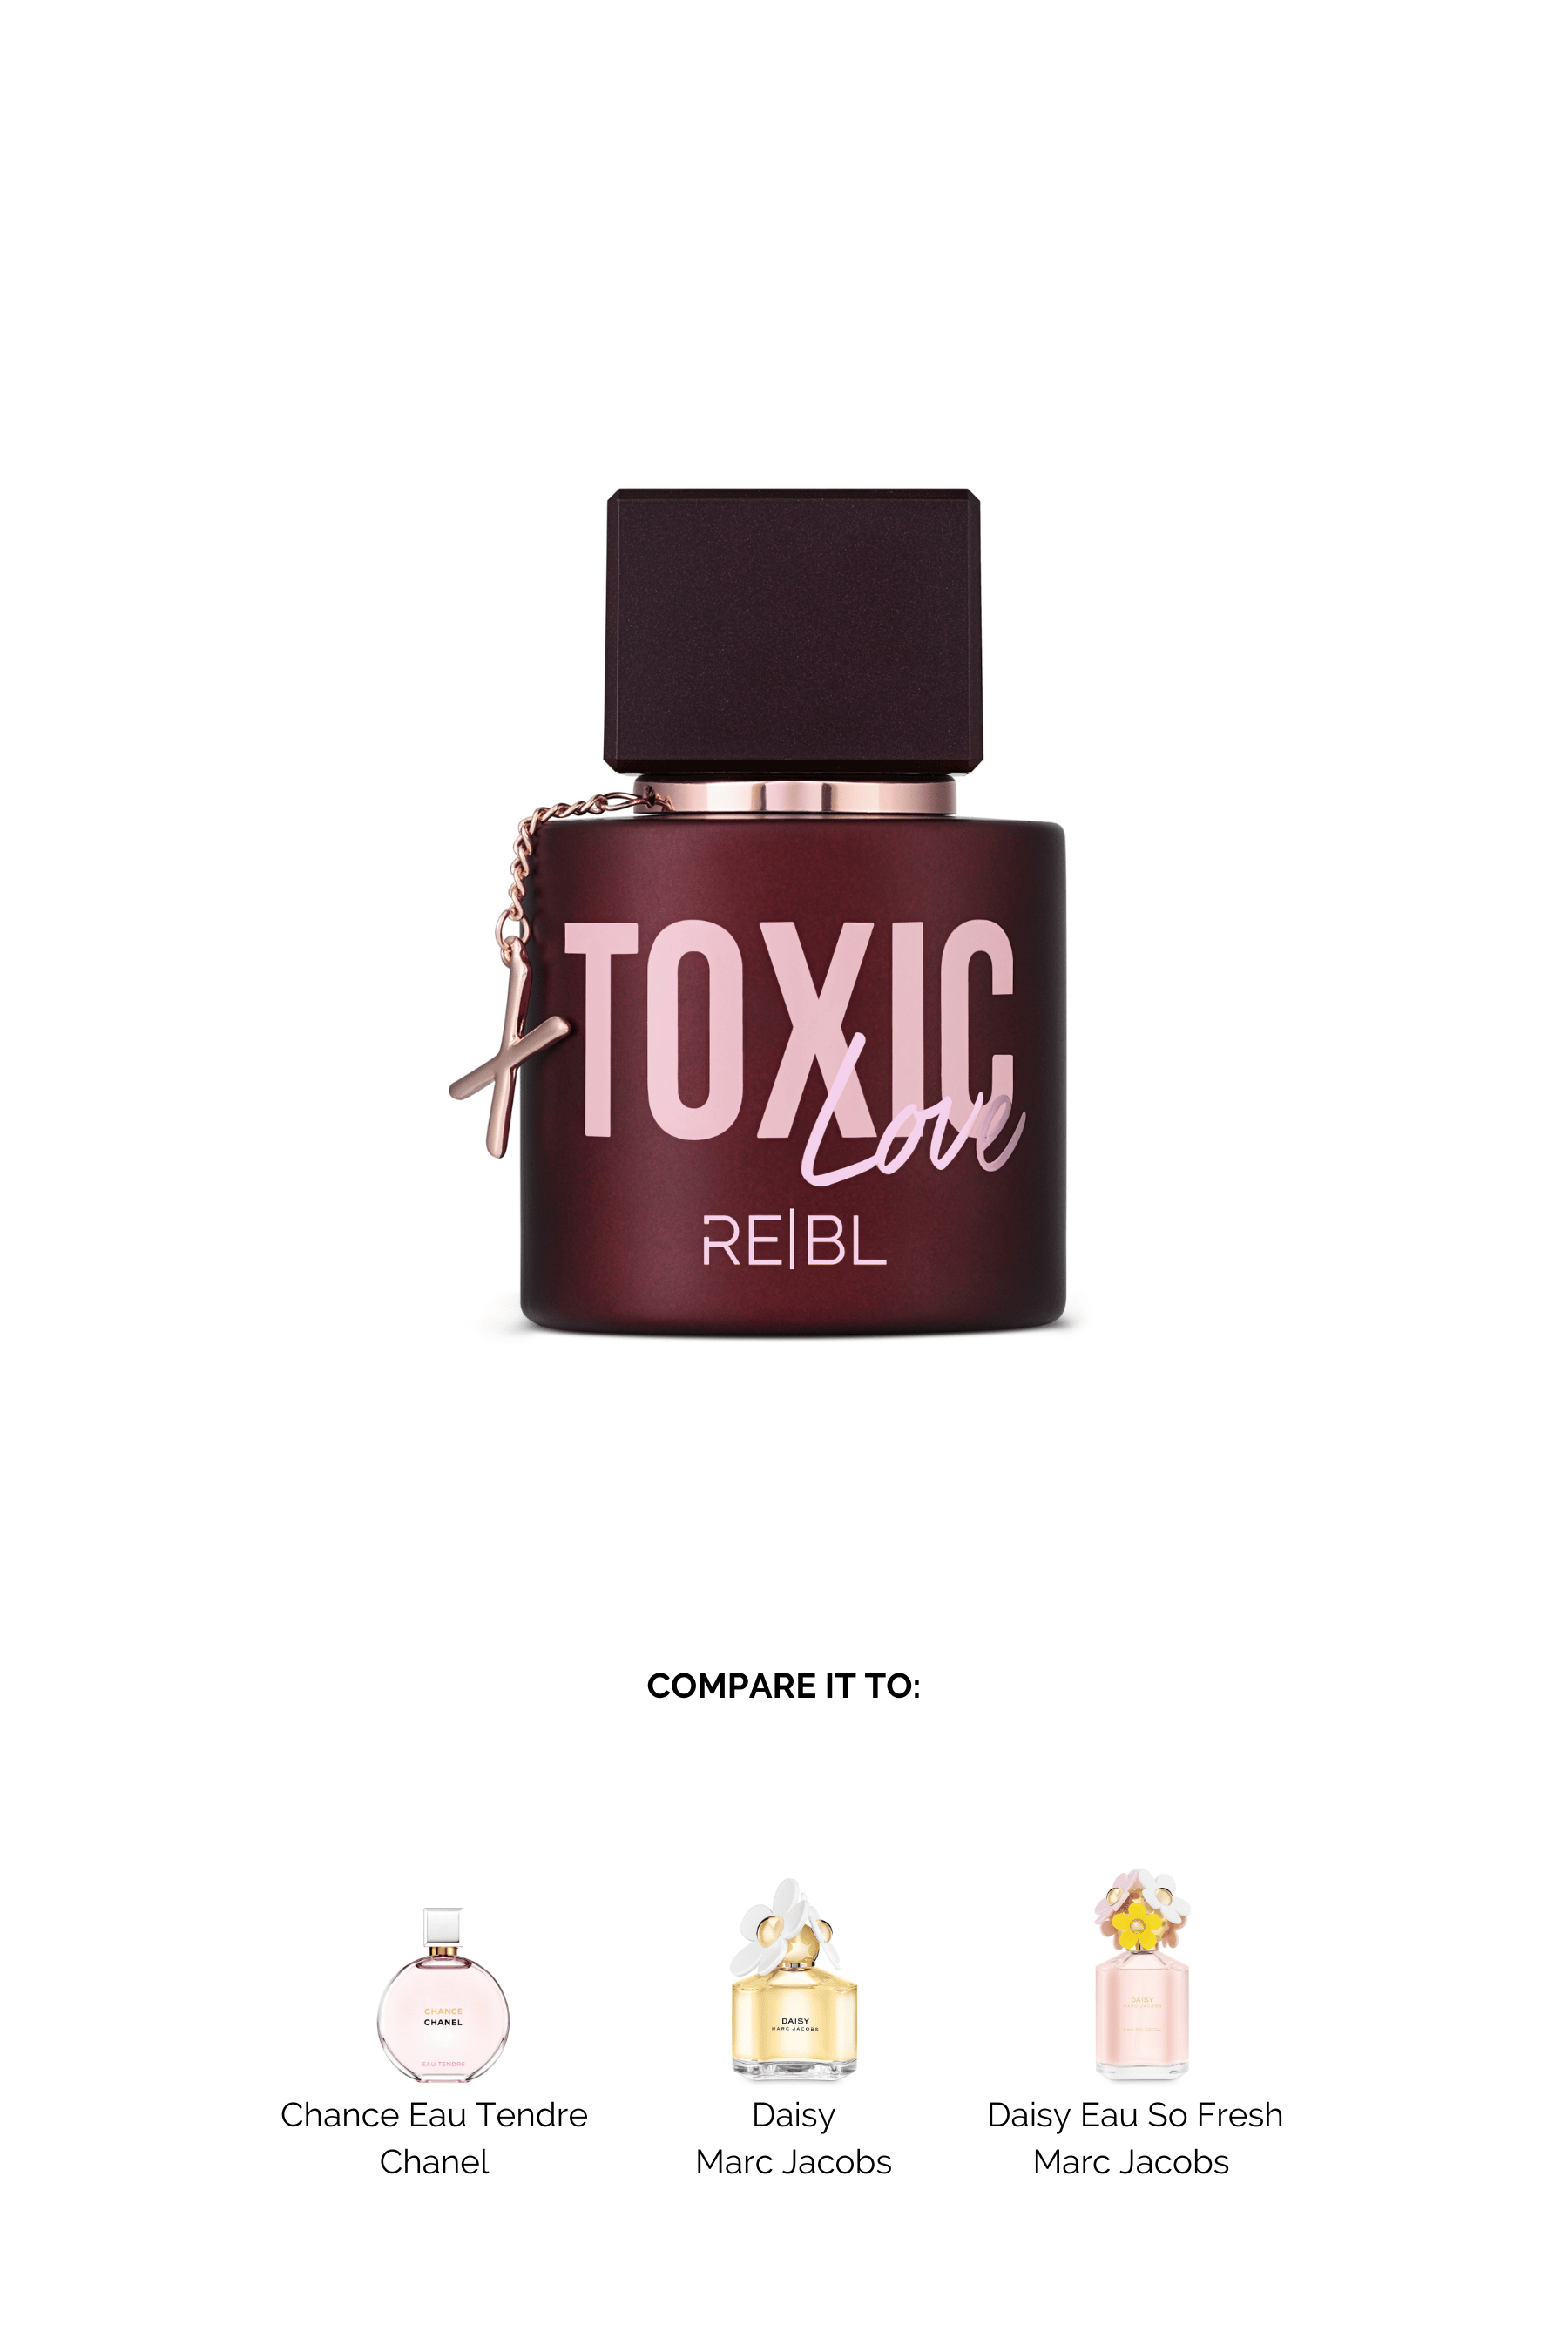 REBL | Toxic Love Eau de Parfum